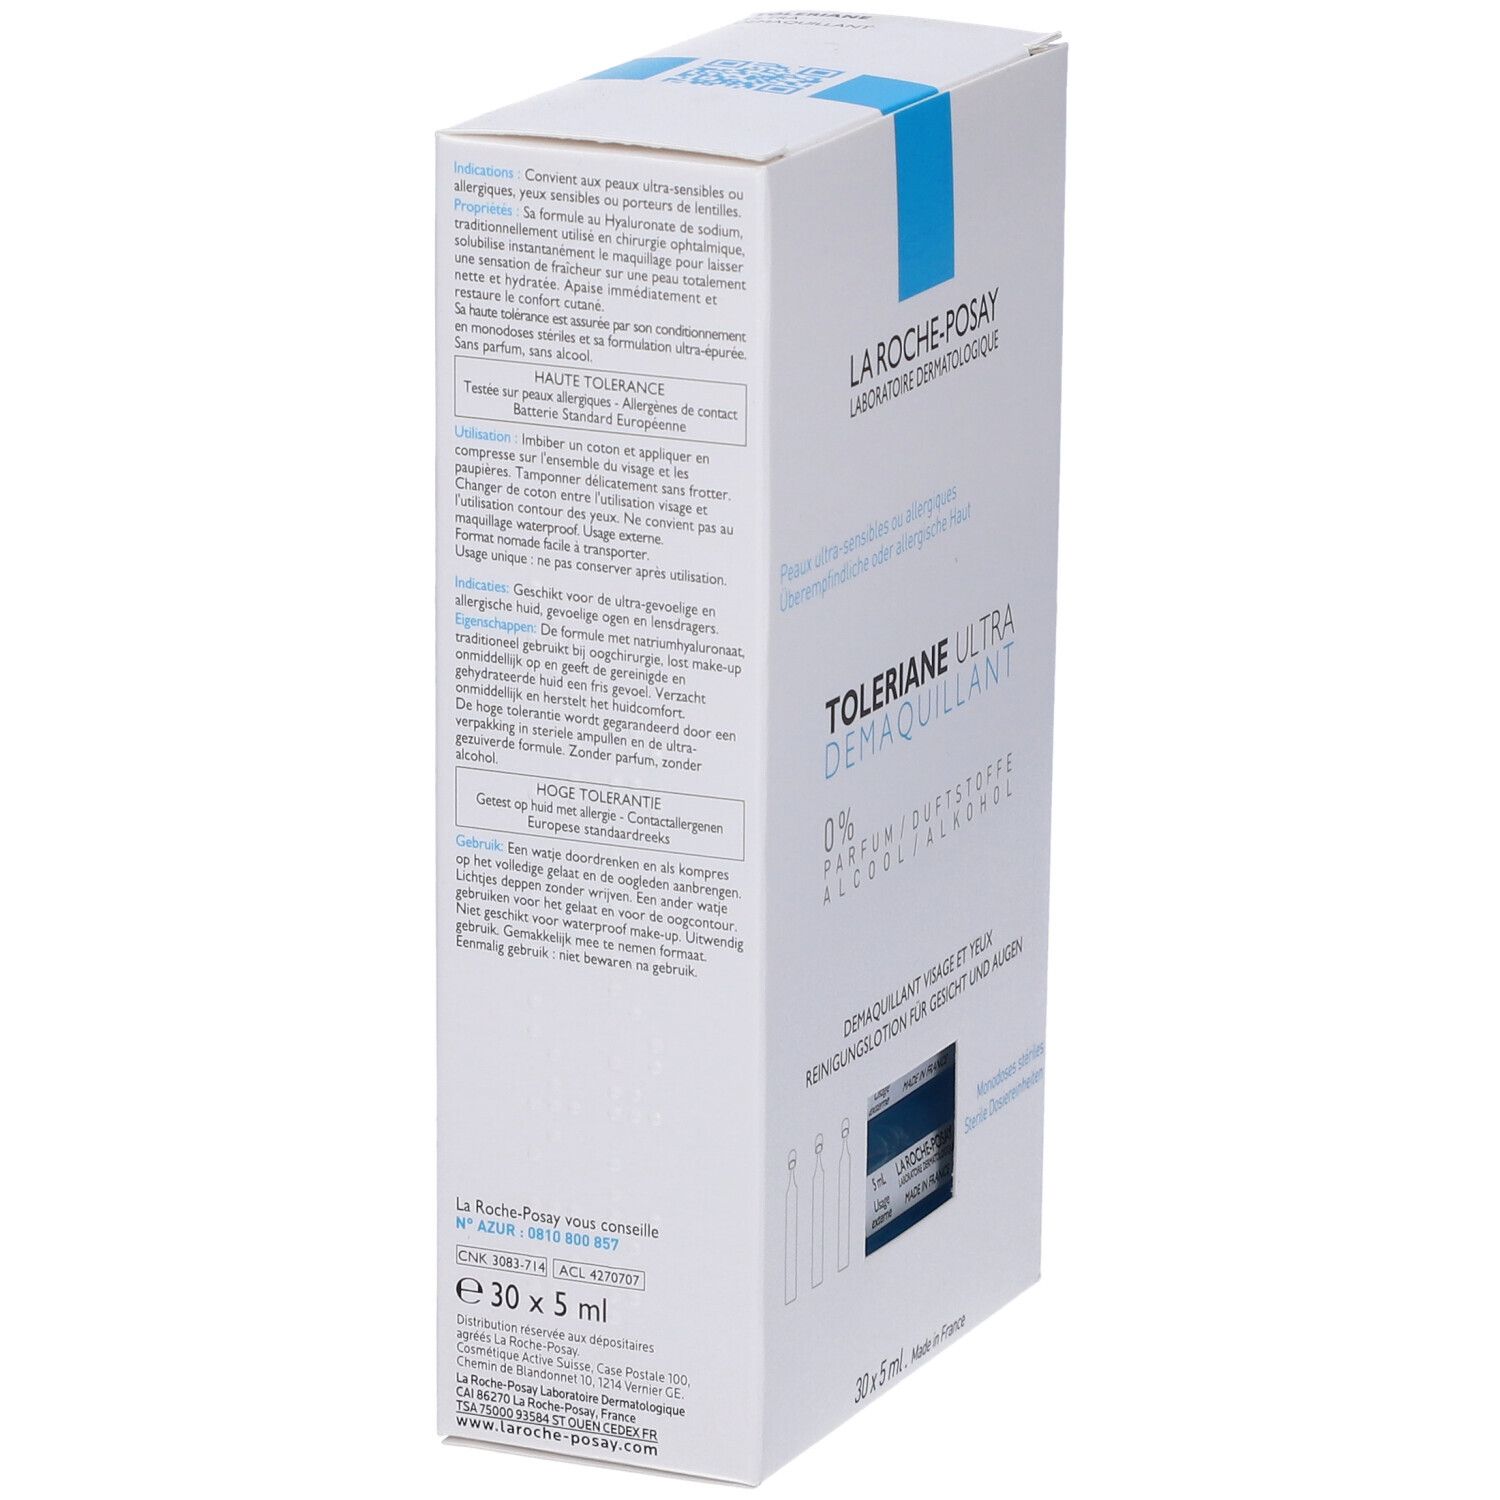 La Roche-Posay Toleriane Ultra Struccante Purificante 30 X 5 ml